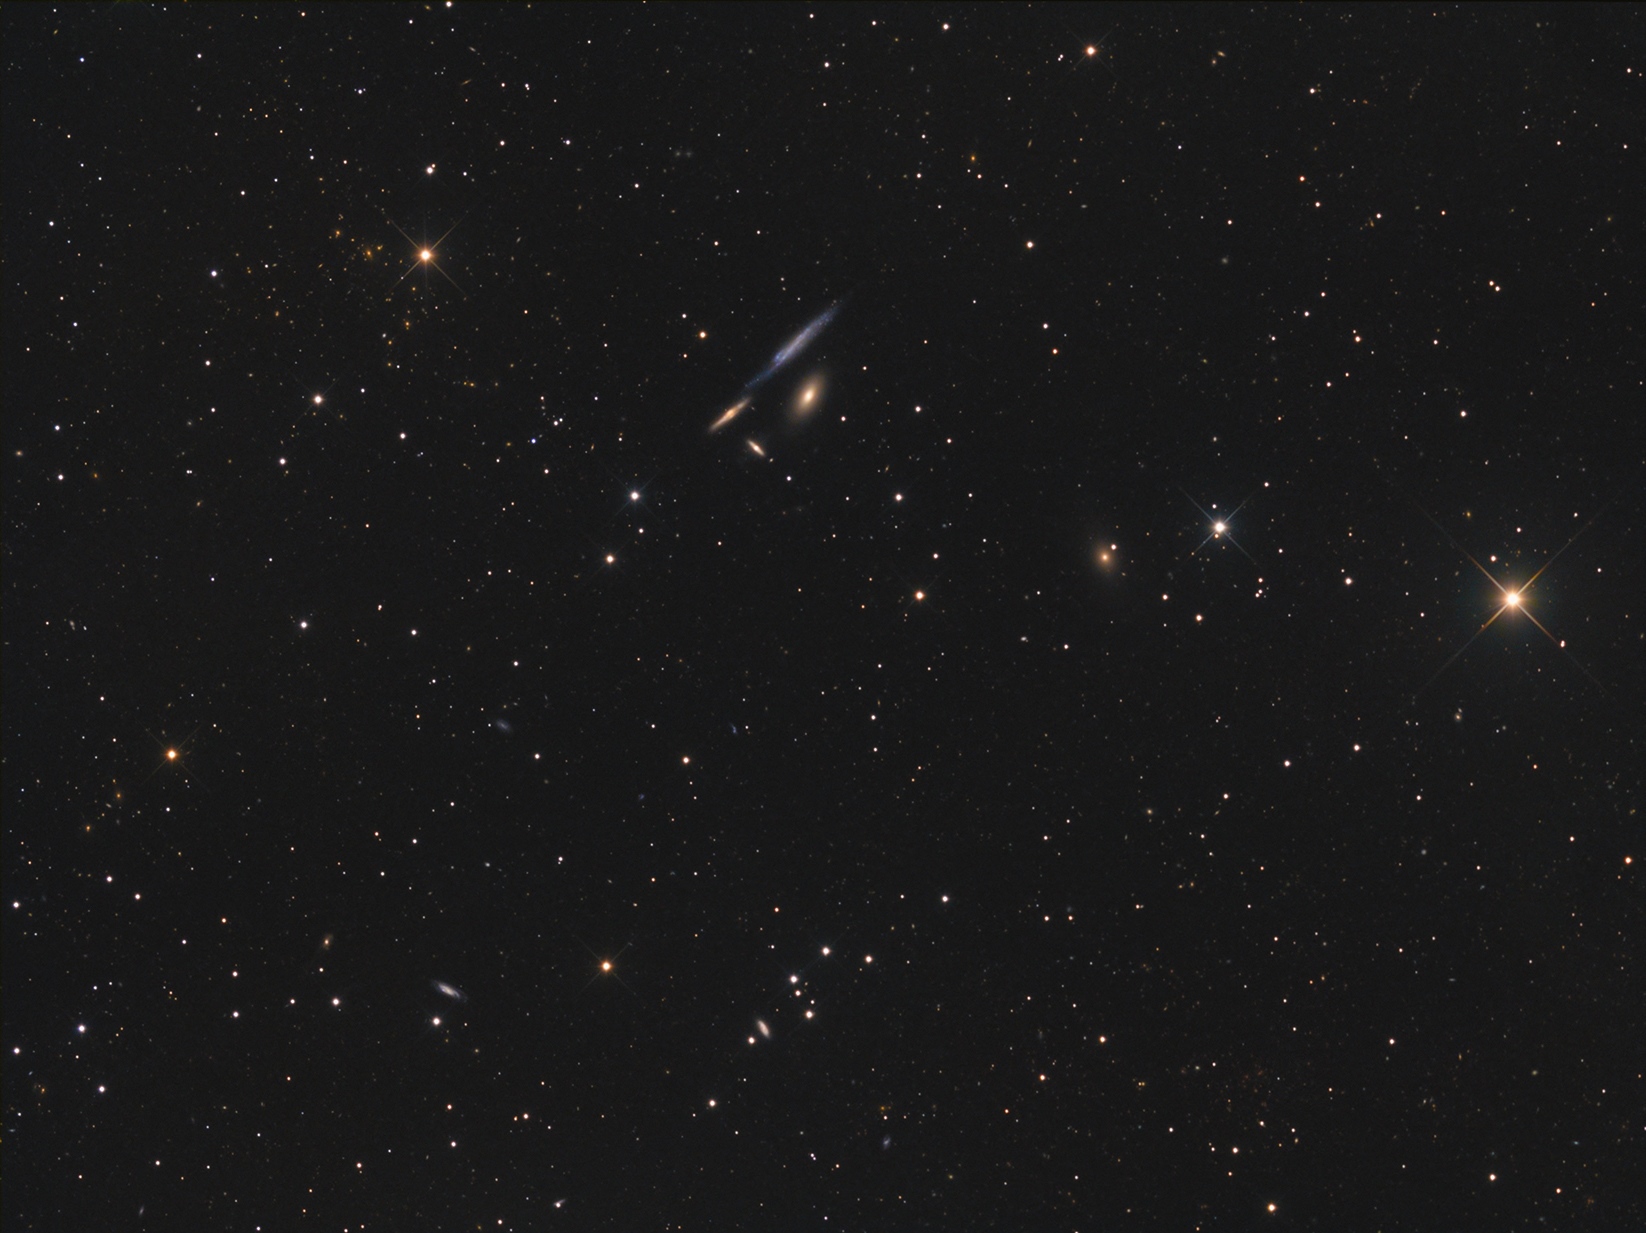 NGC 4173